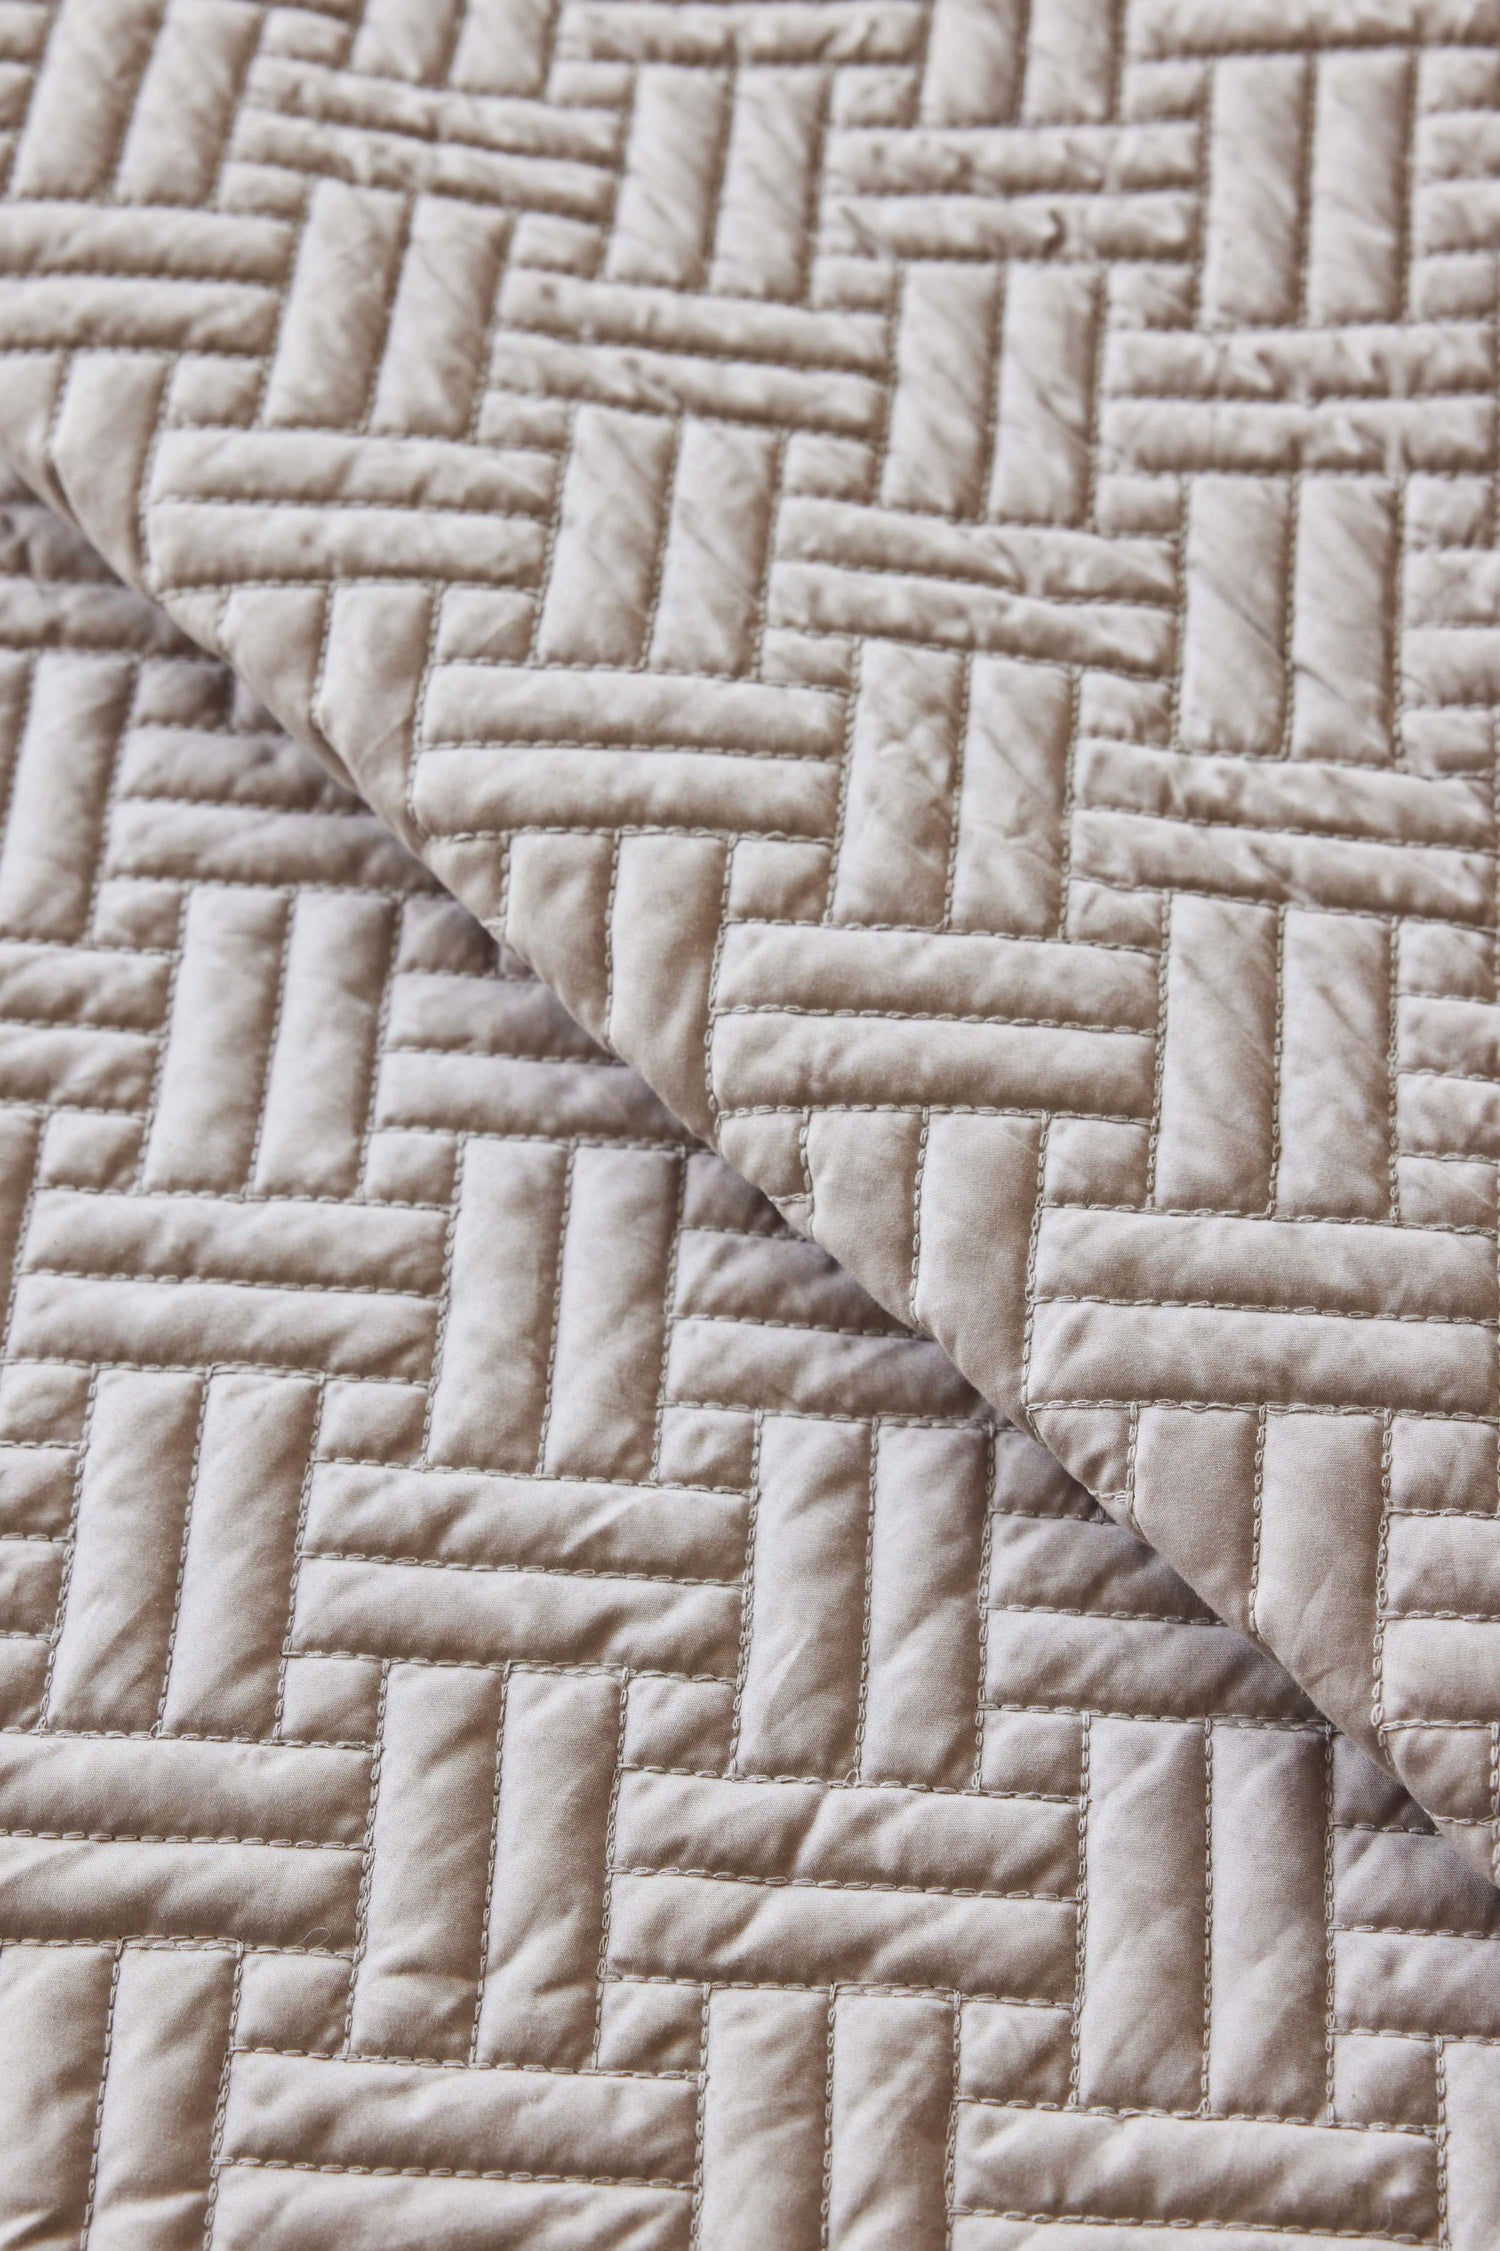 Pewter basketweave quilt stitching detail